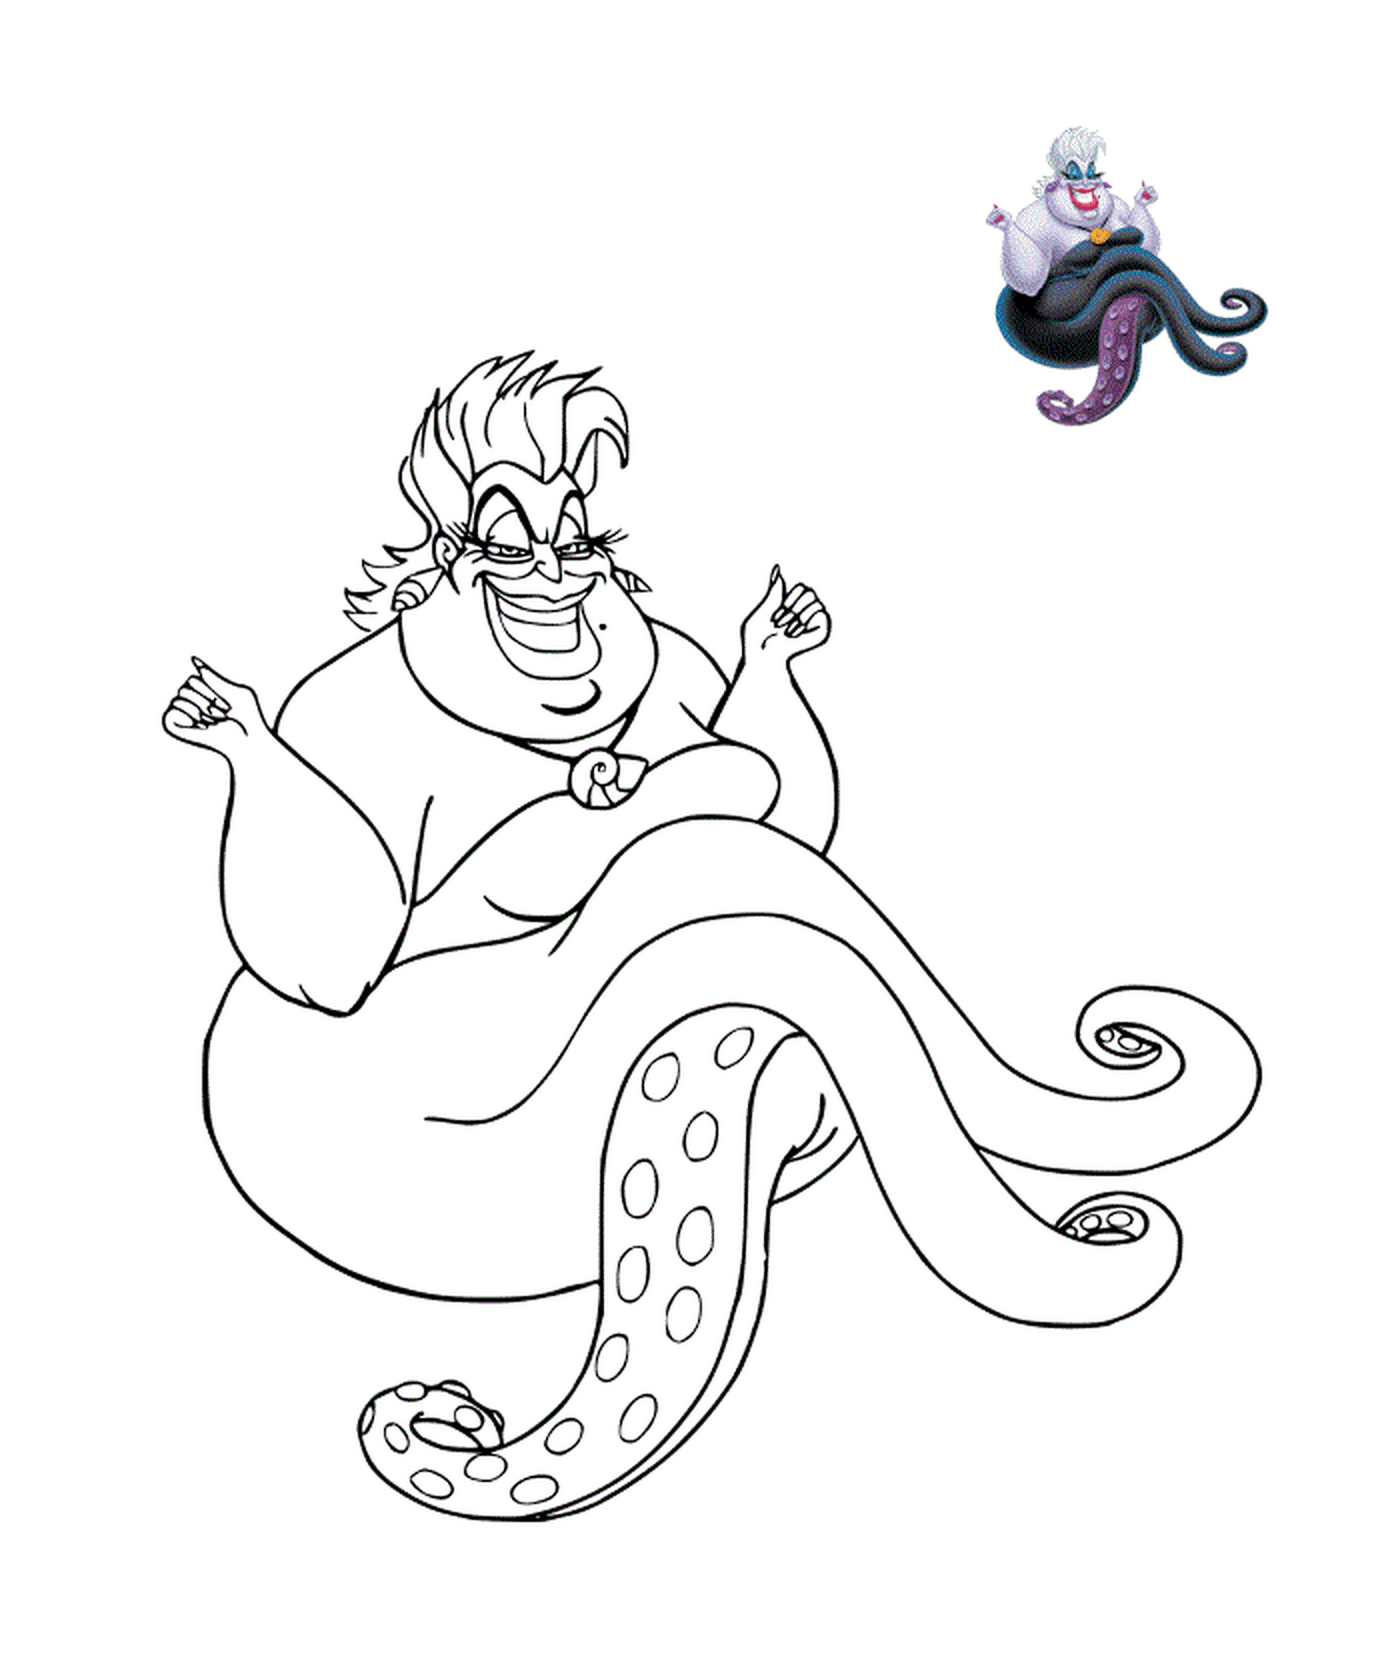   Ursula, la sorcière des mers 